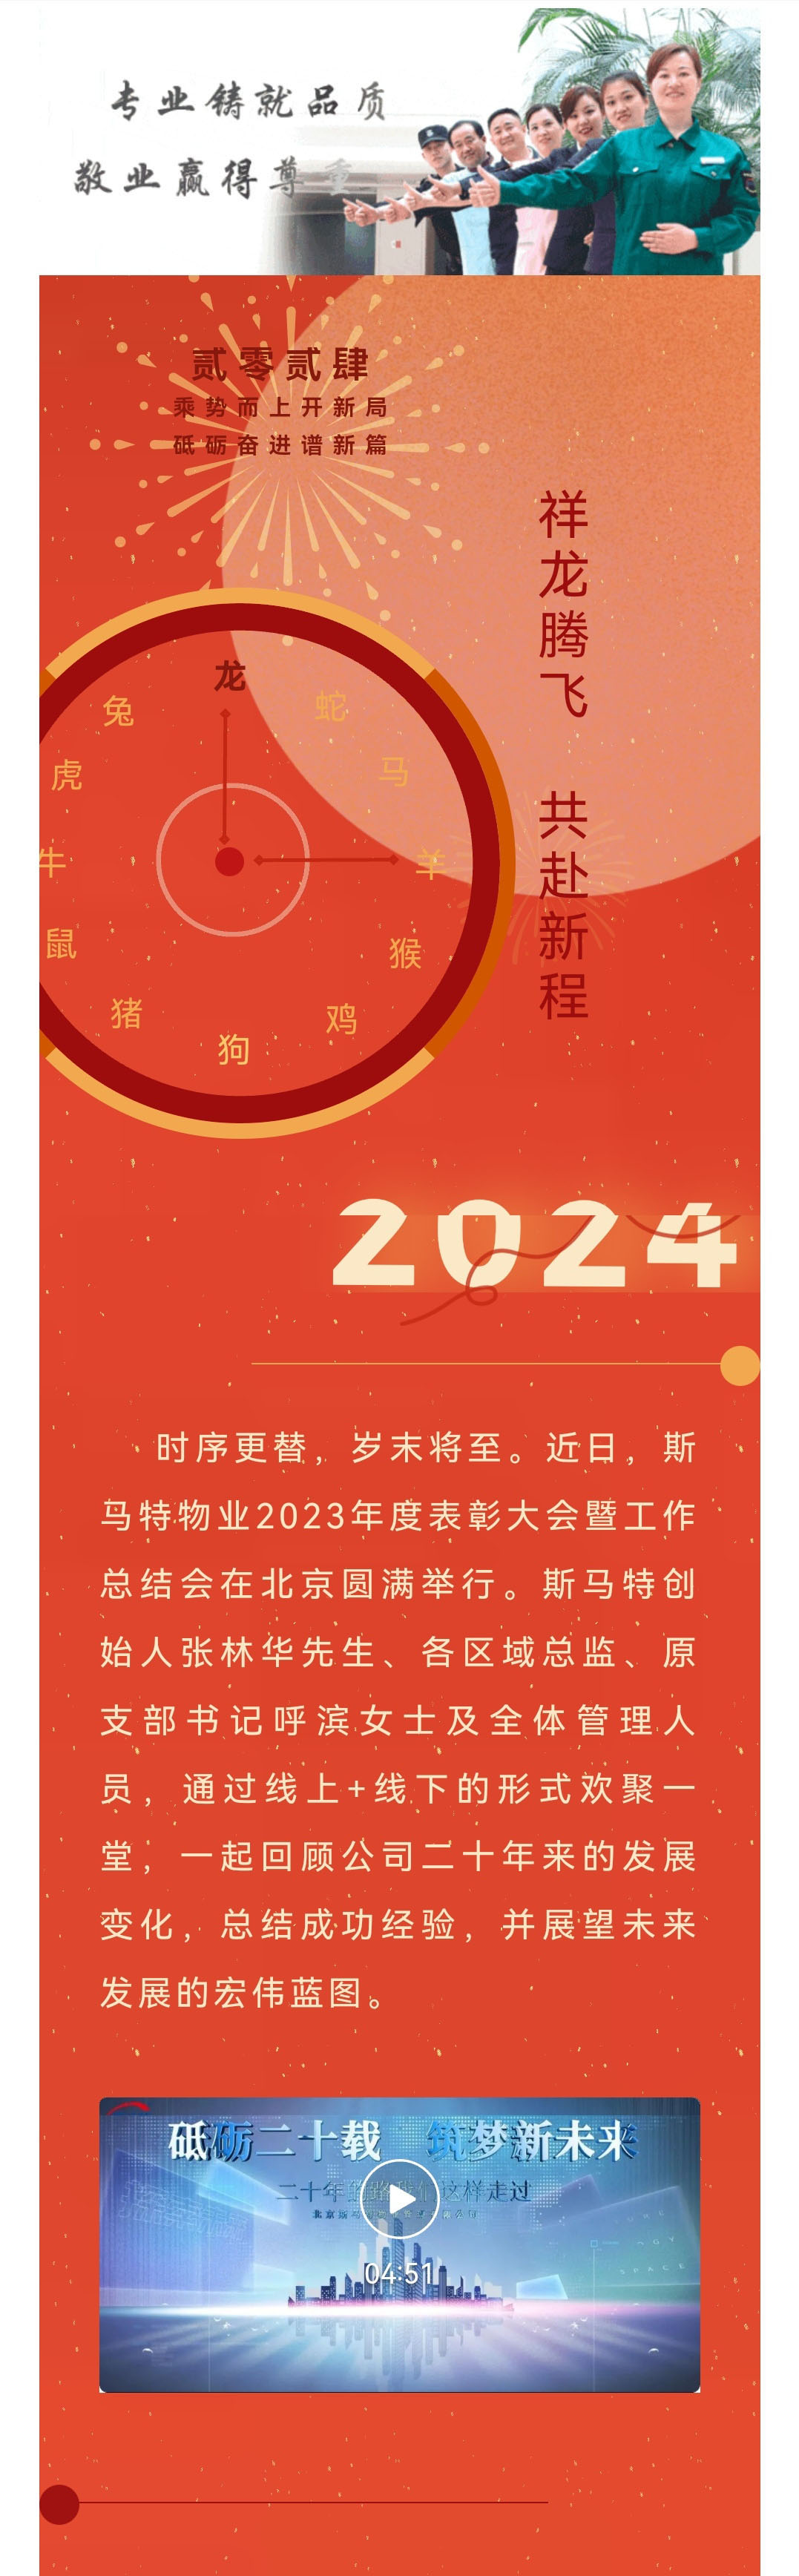 看龍翔萬里  啟盛世華章——斯馬特物業2023年度表彰大會暨工作總結會